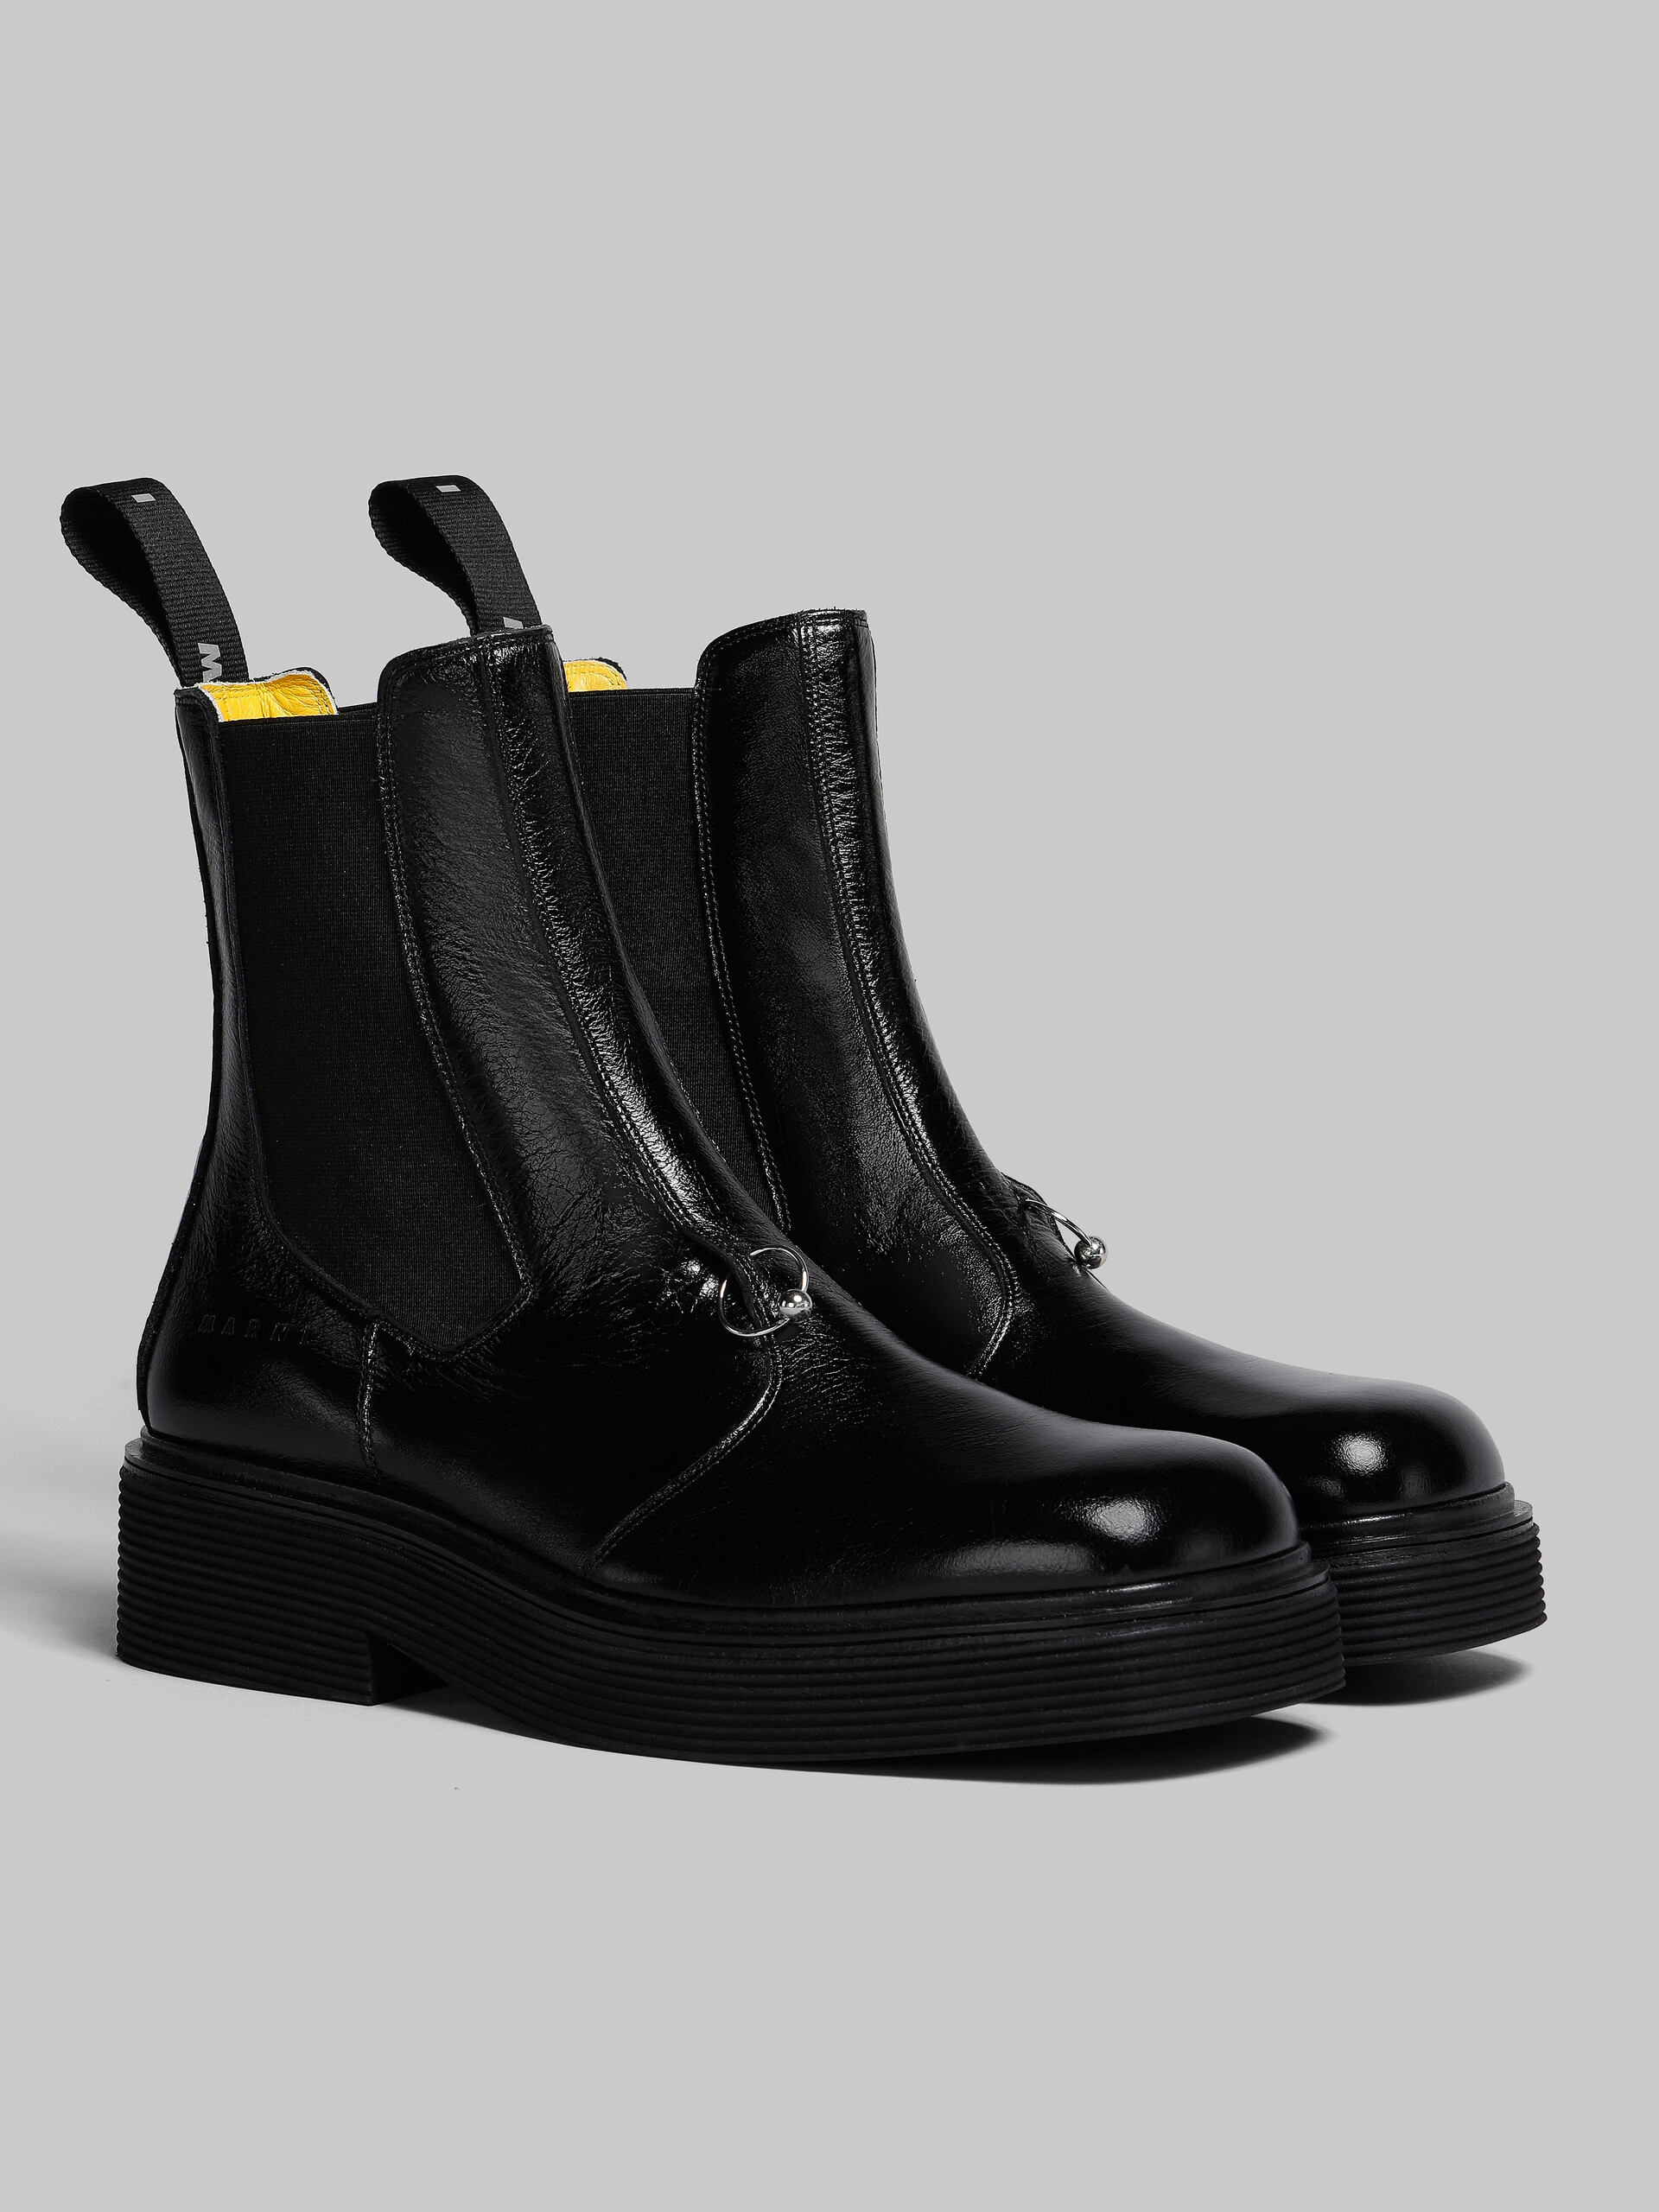 【新品】  MARNI / マルニ | 2020AW | Leather ankle boots with logo レザー ロゴパッチ ブーツ | 38 | ブラック | レディース靴/シューズ